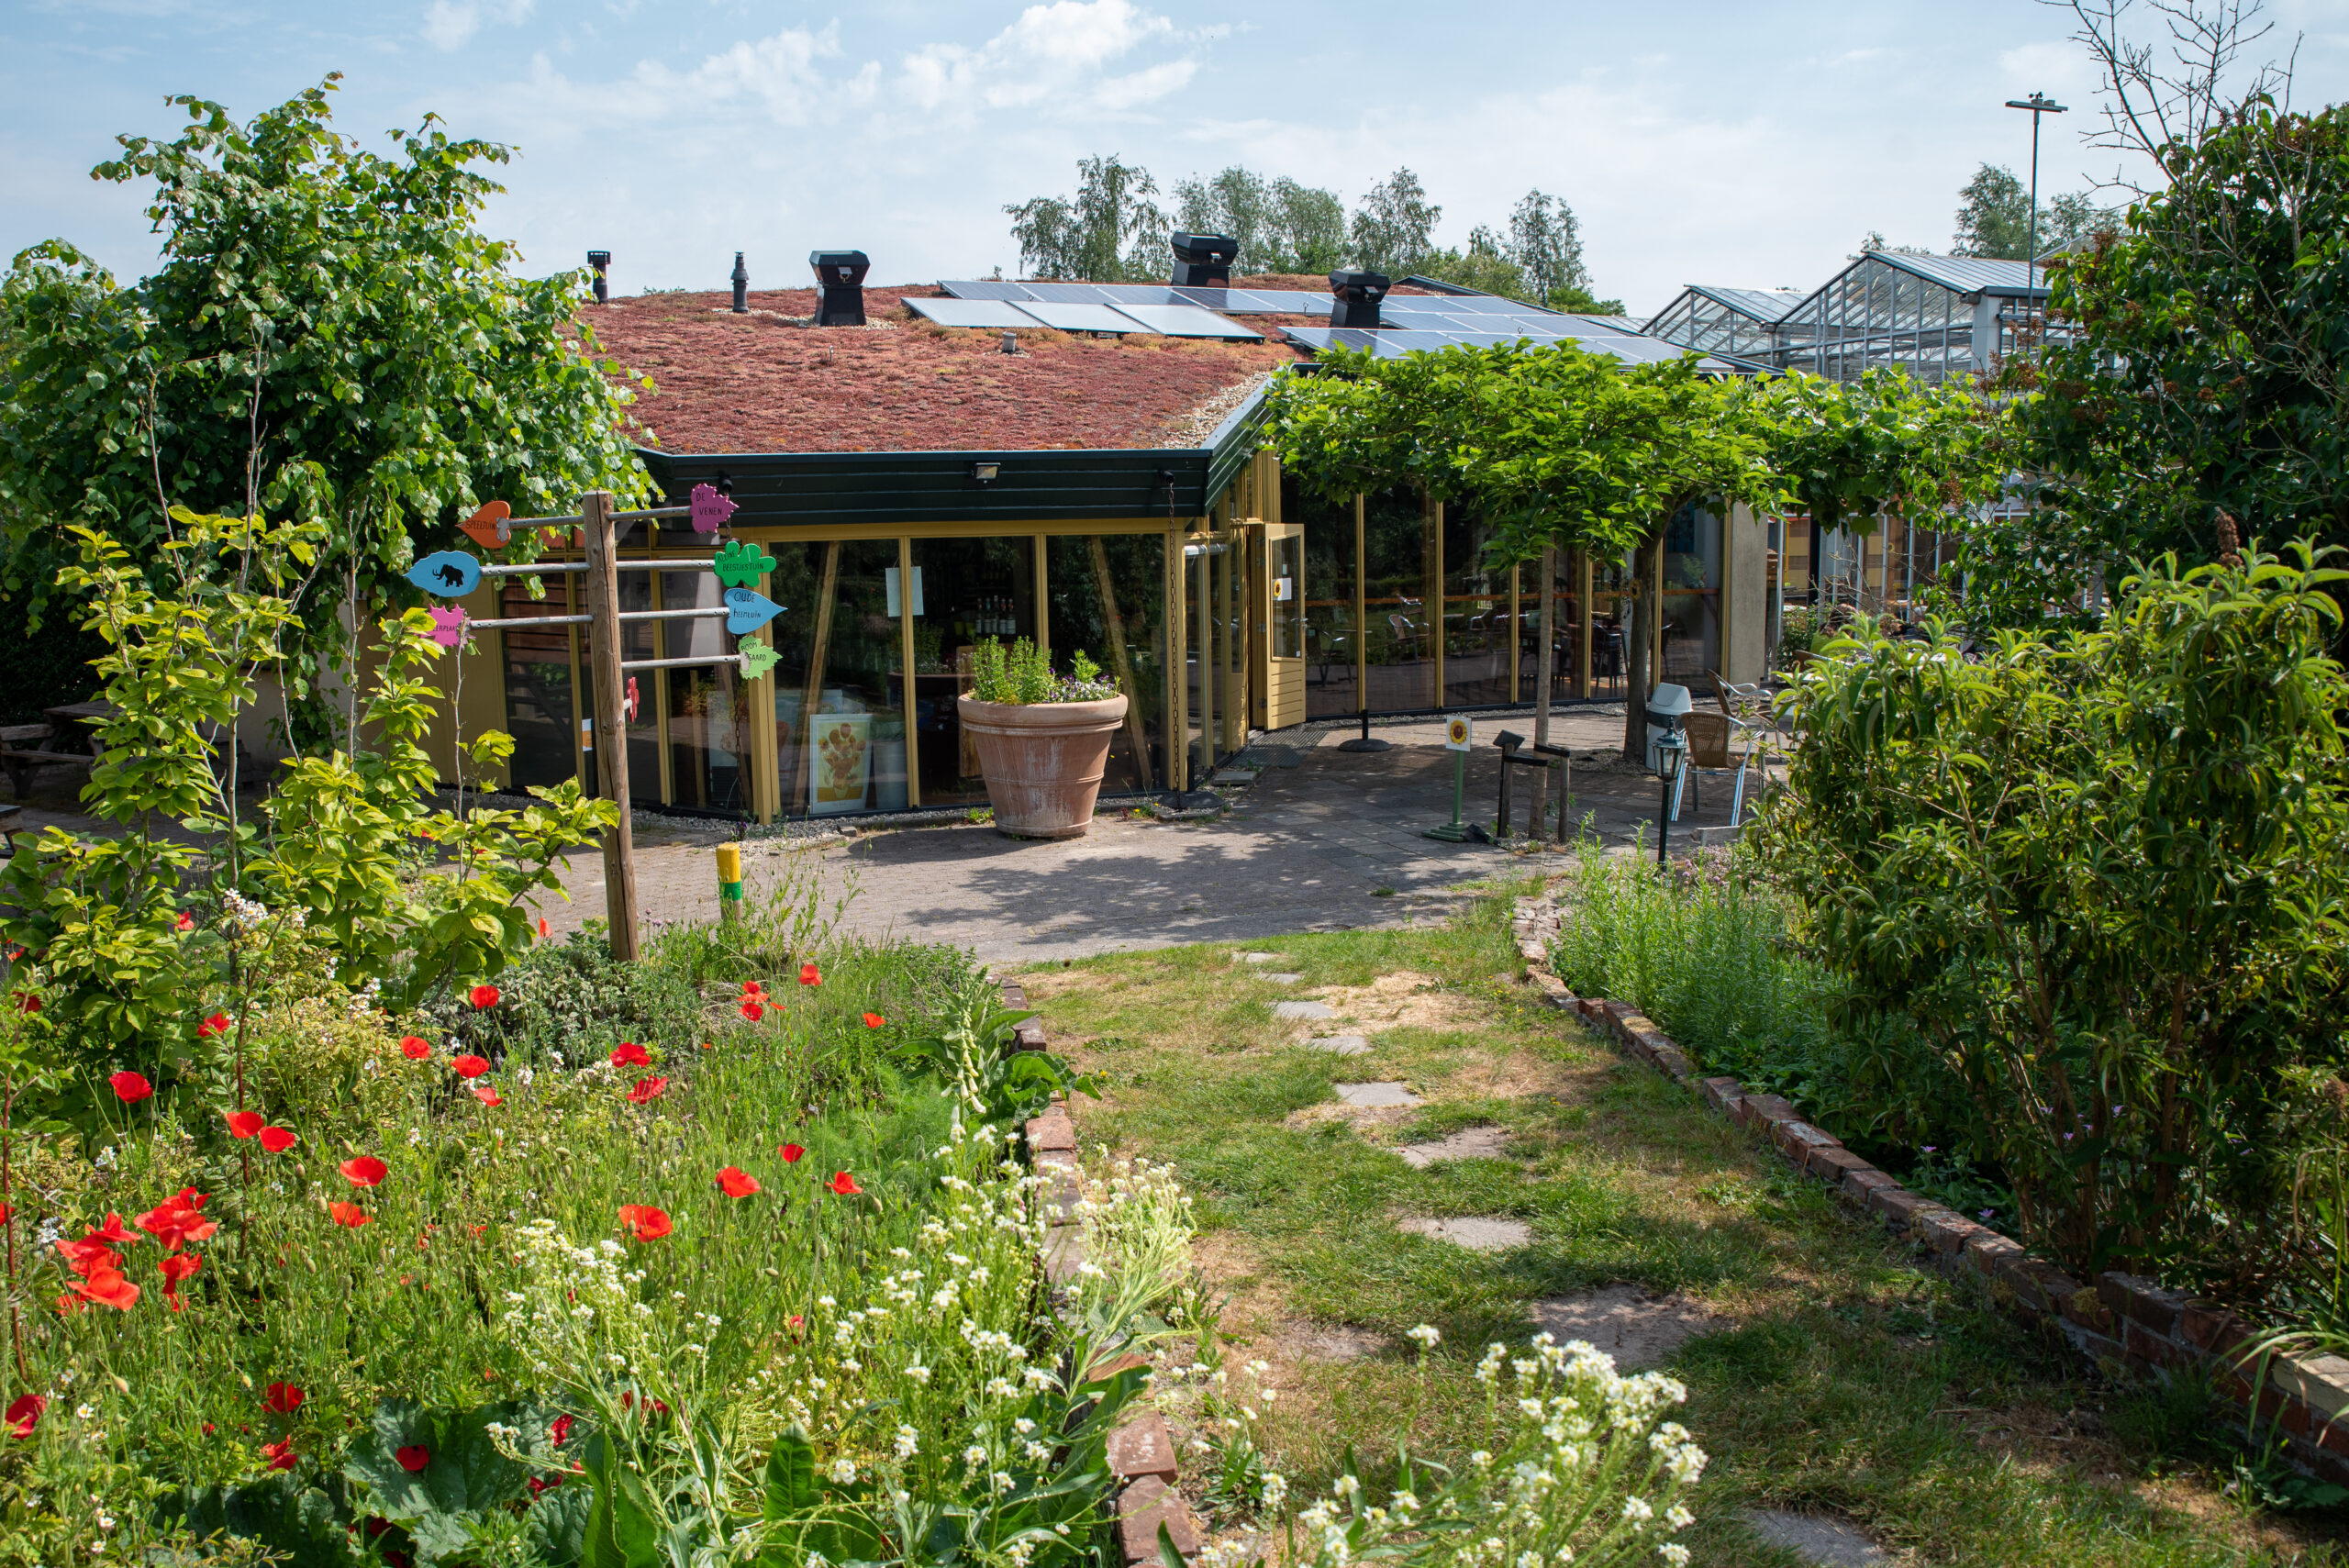 Tuinclub naar de Heemtuin in Muntendam